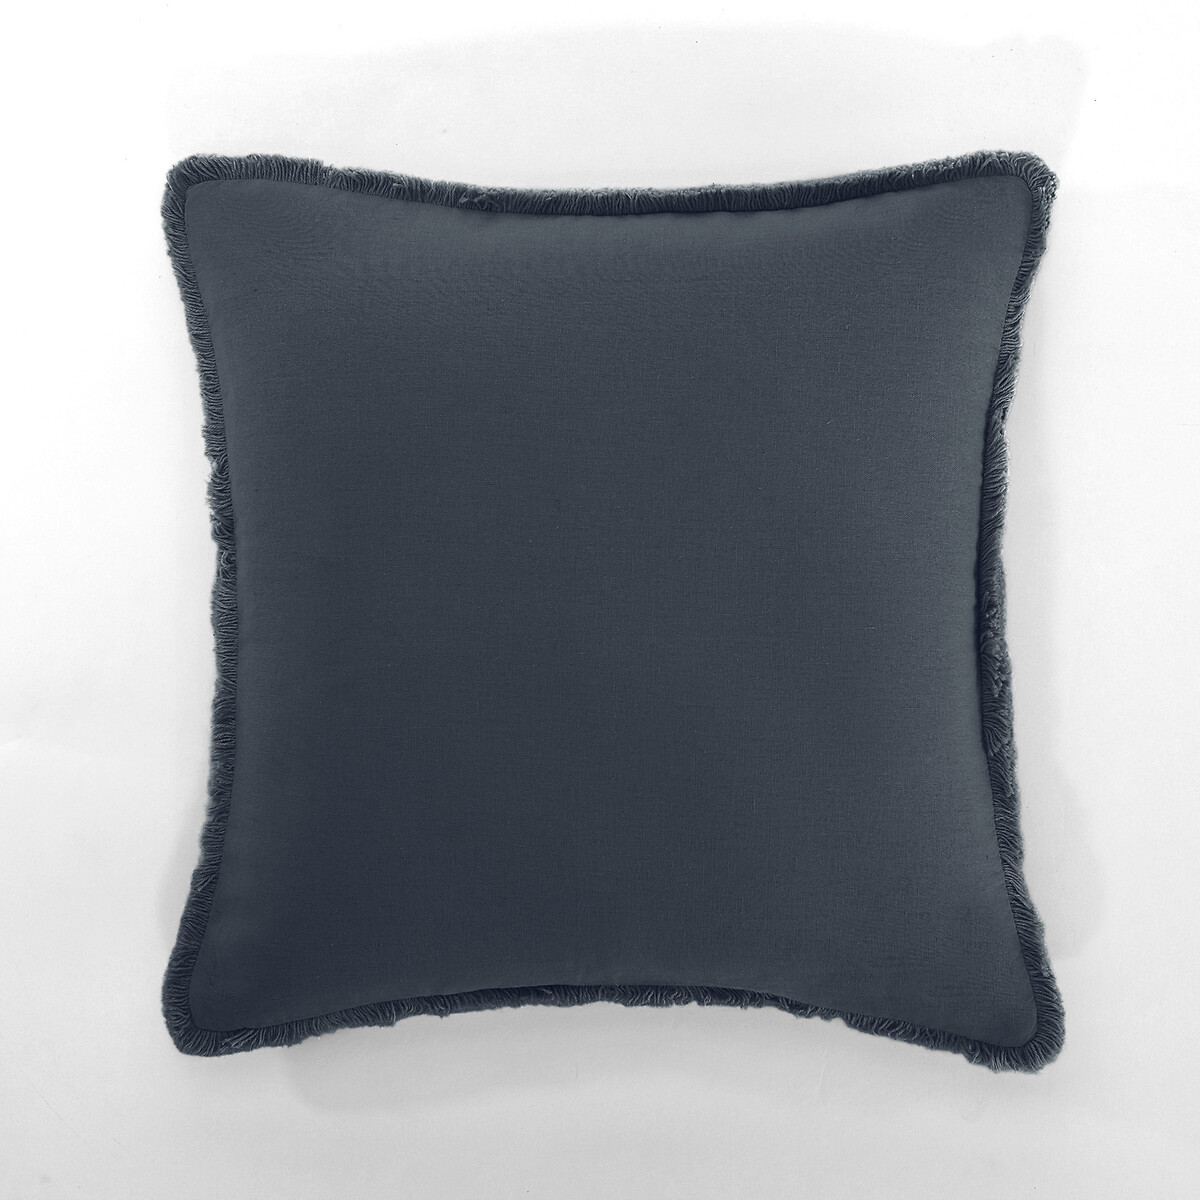 Чехол на подушку из льнавискозы  ODORIE  40 x 40 см синий LaRedoute, размер 40 x 40 см